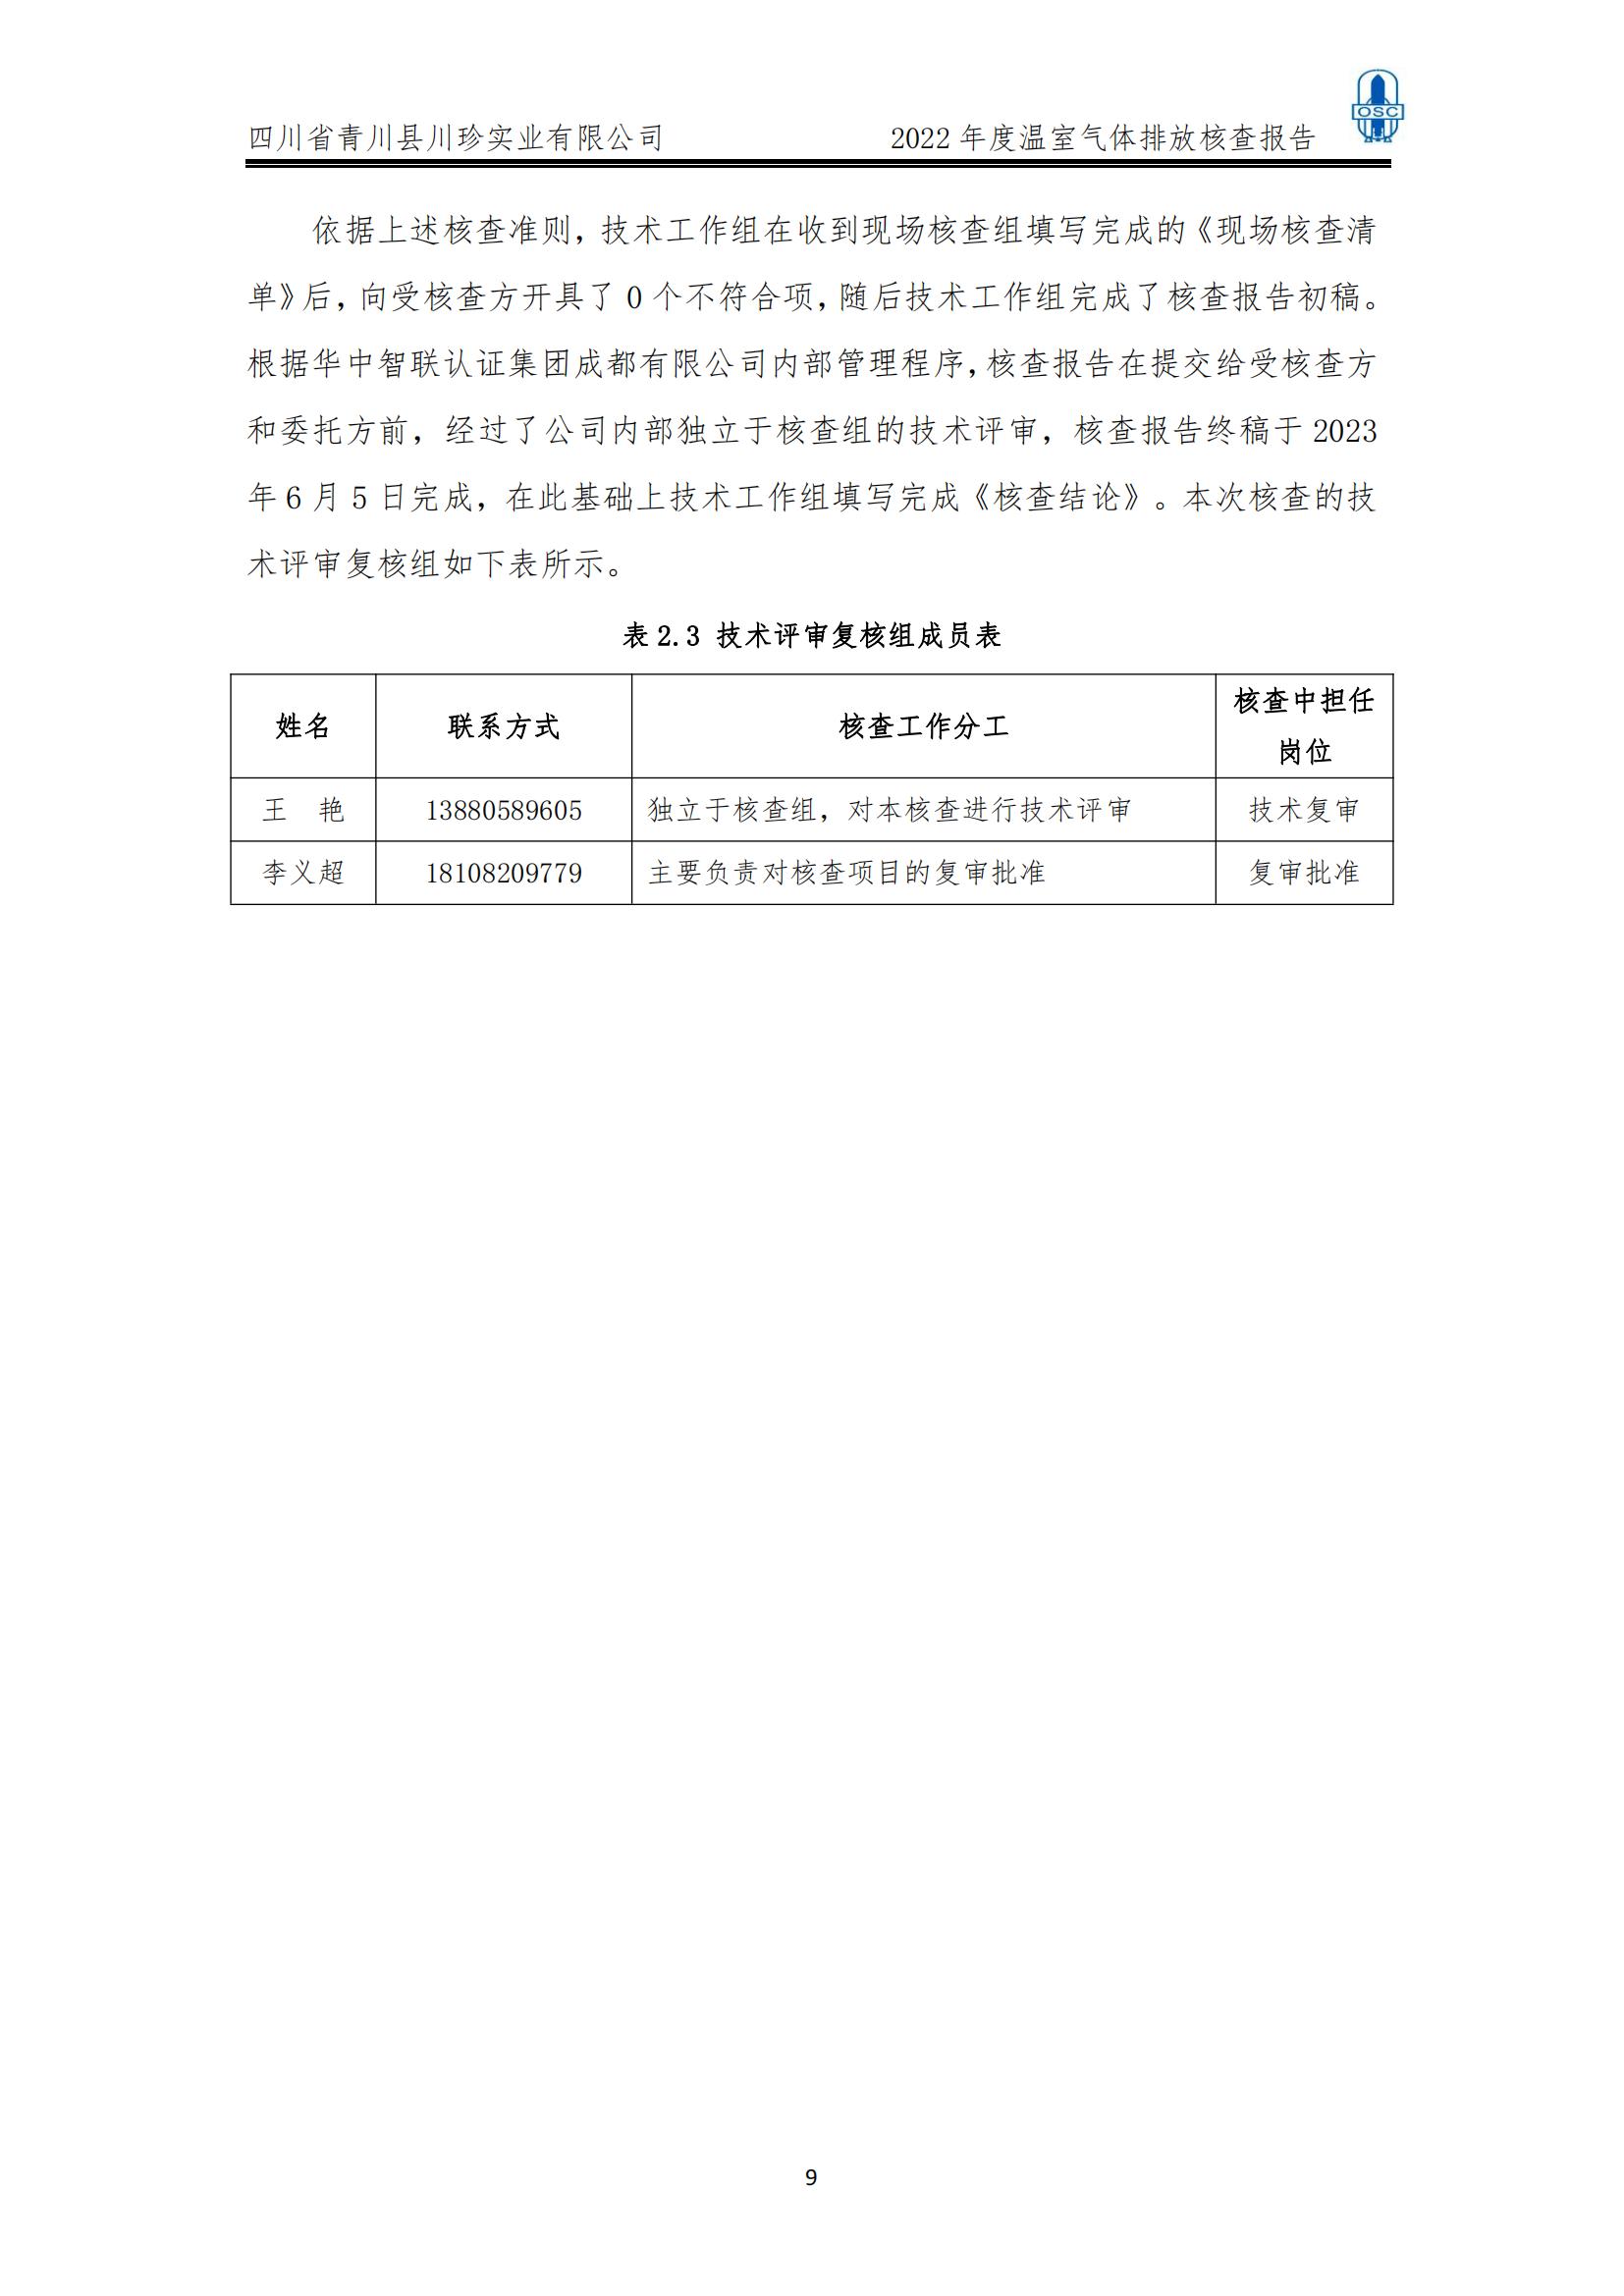 2022年度温室气体核查报告(四川省青川县川珍实业有限公司(图10)